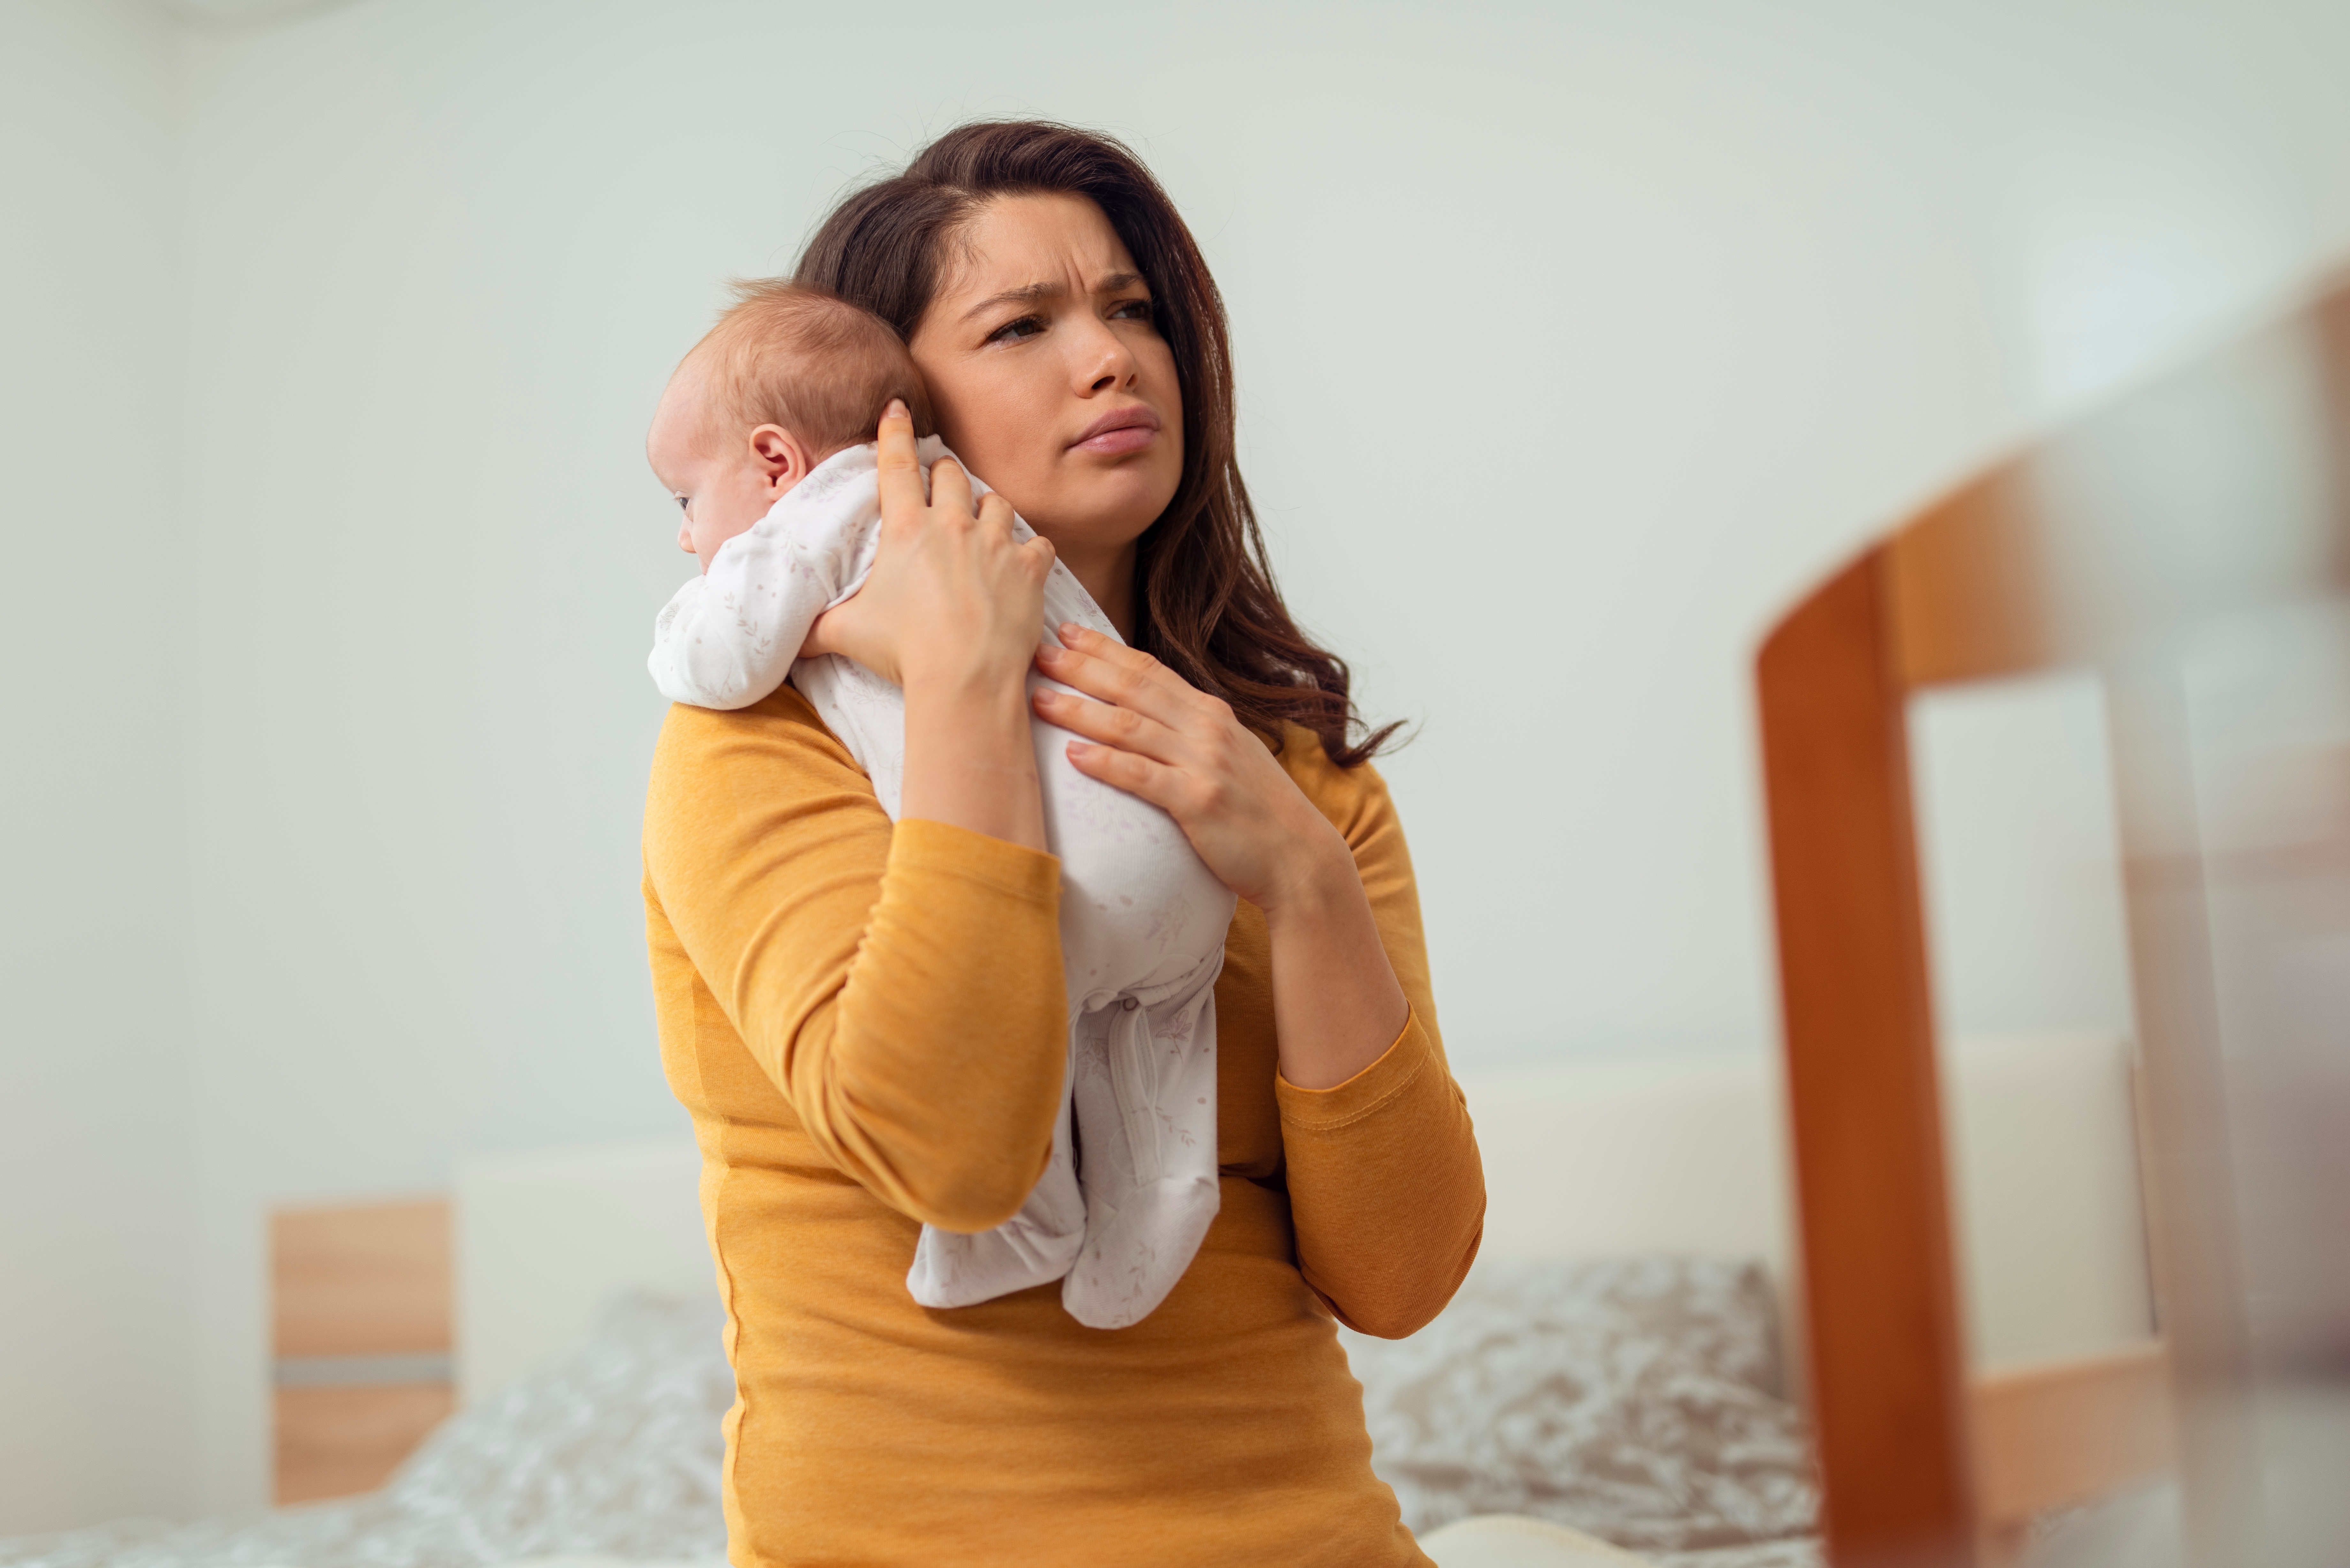 Une femme à l'air fatigué alors qu'elle tient un bébé | Source : Shutterstock